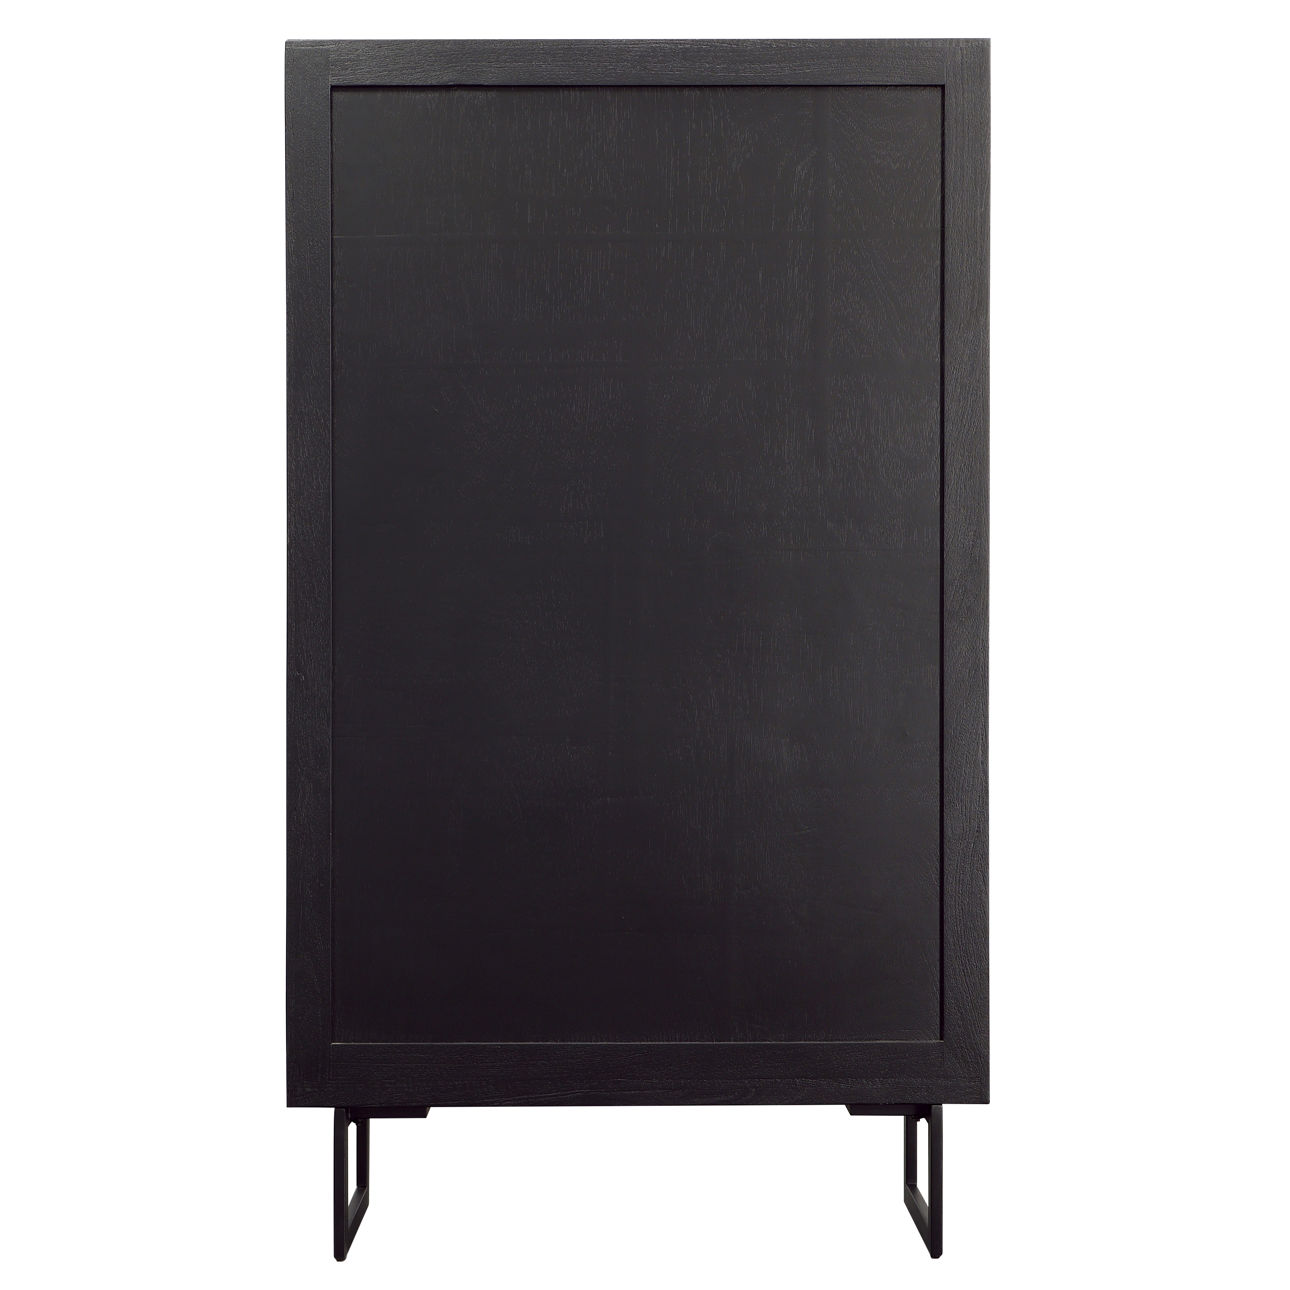 Matte Black Tall Cabinet with Glass Doors - Terra Nova Designs